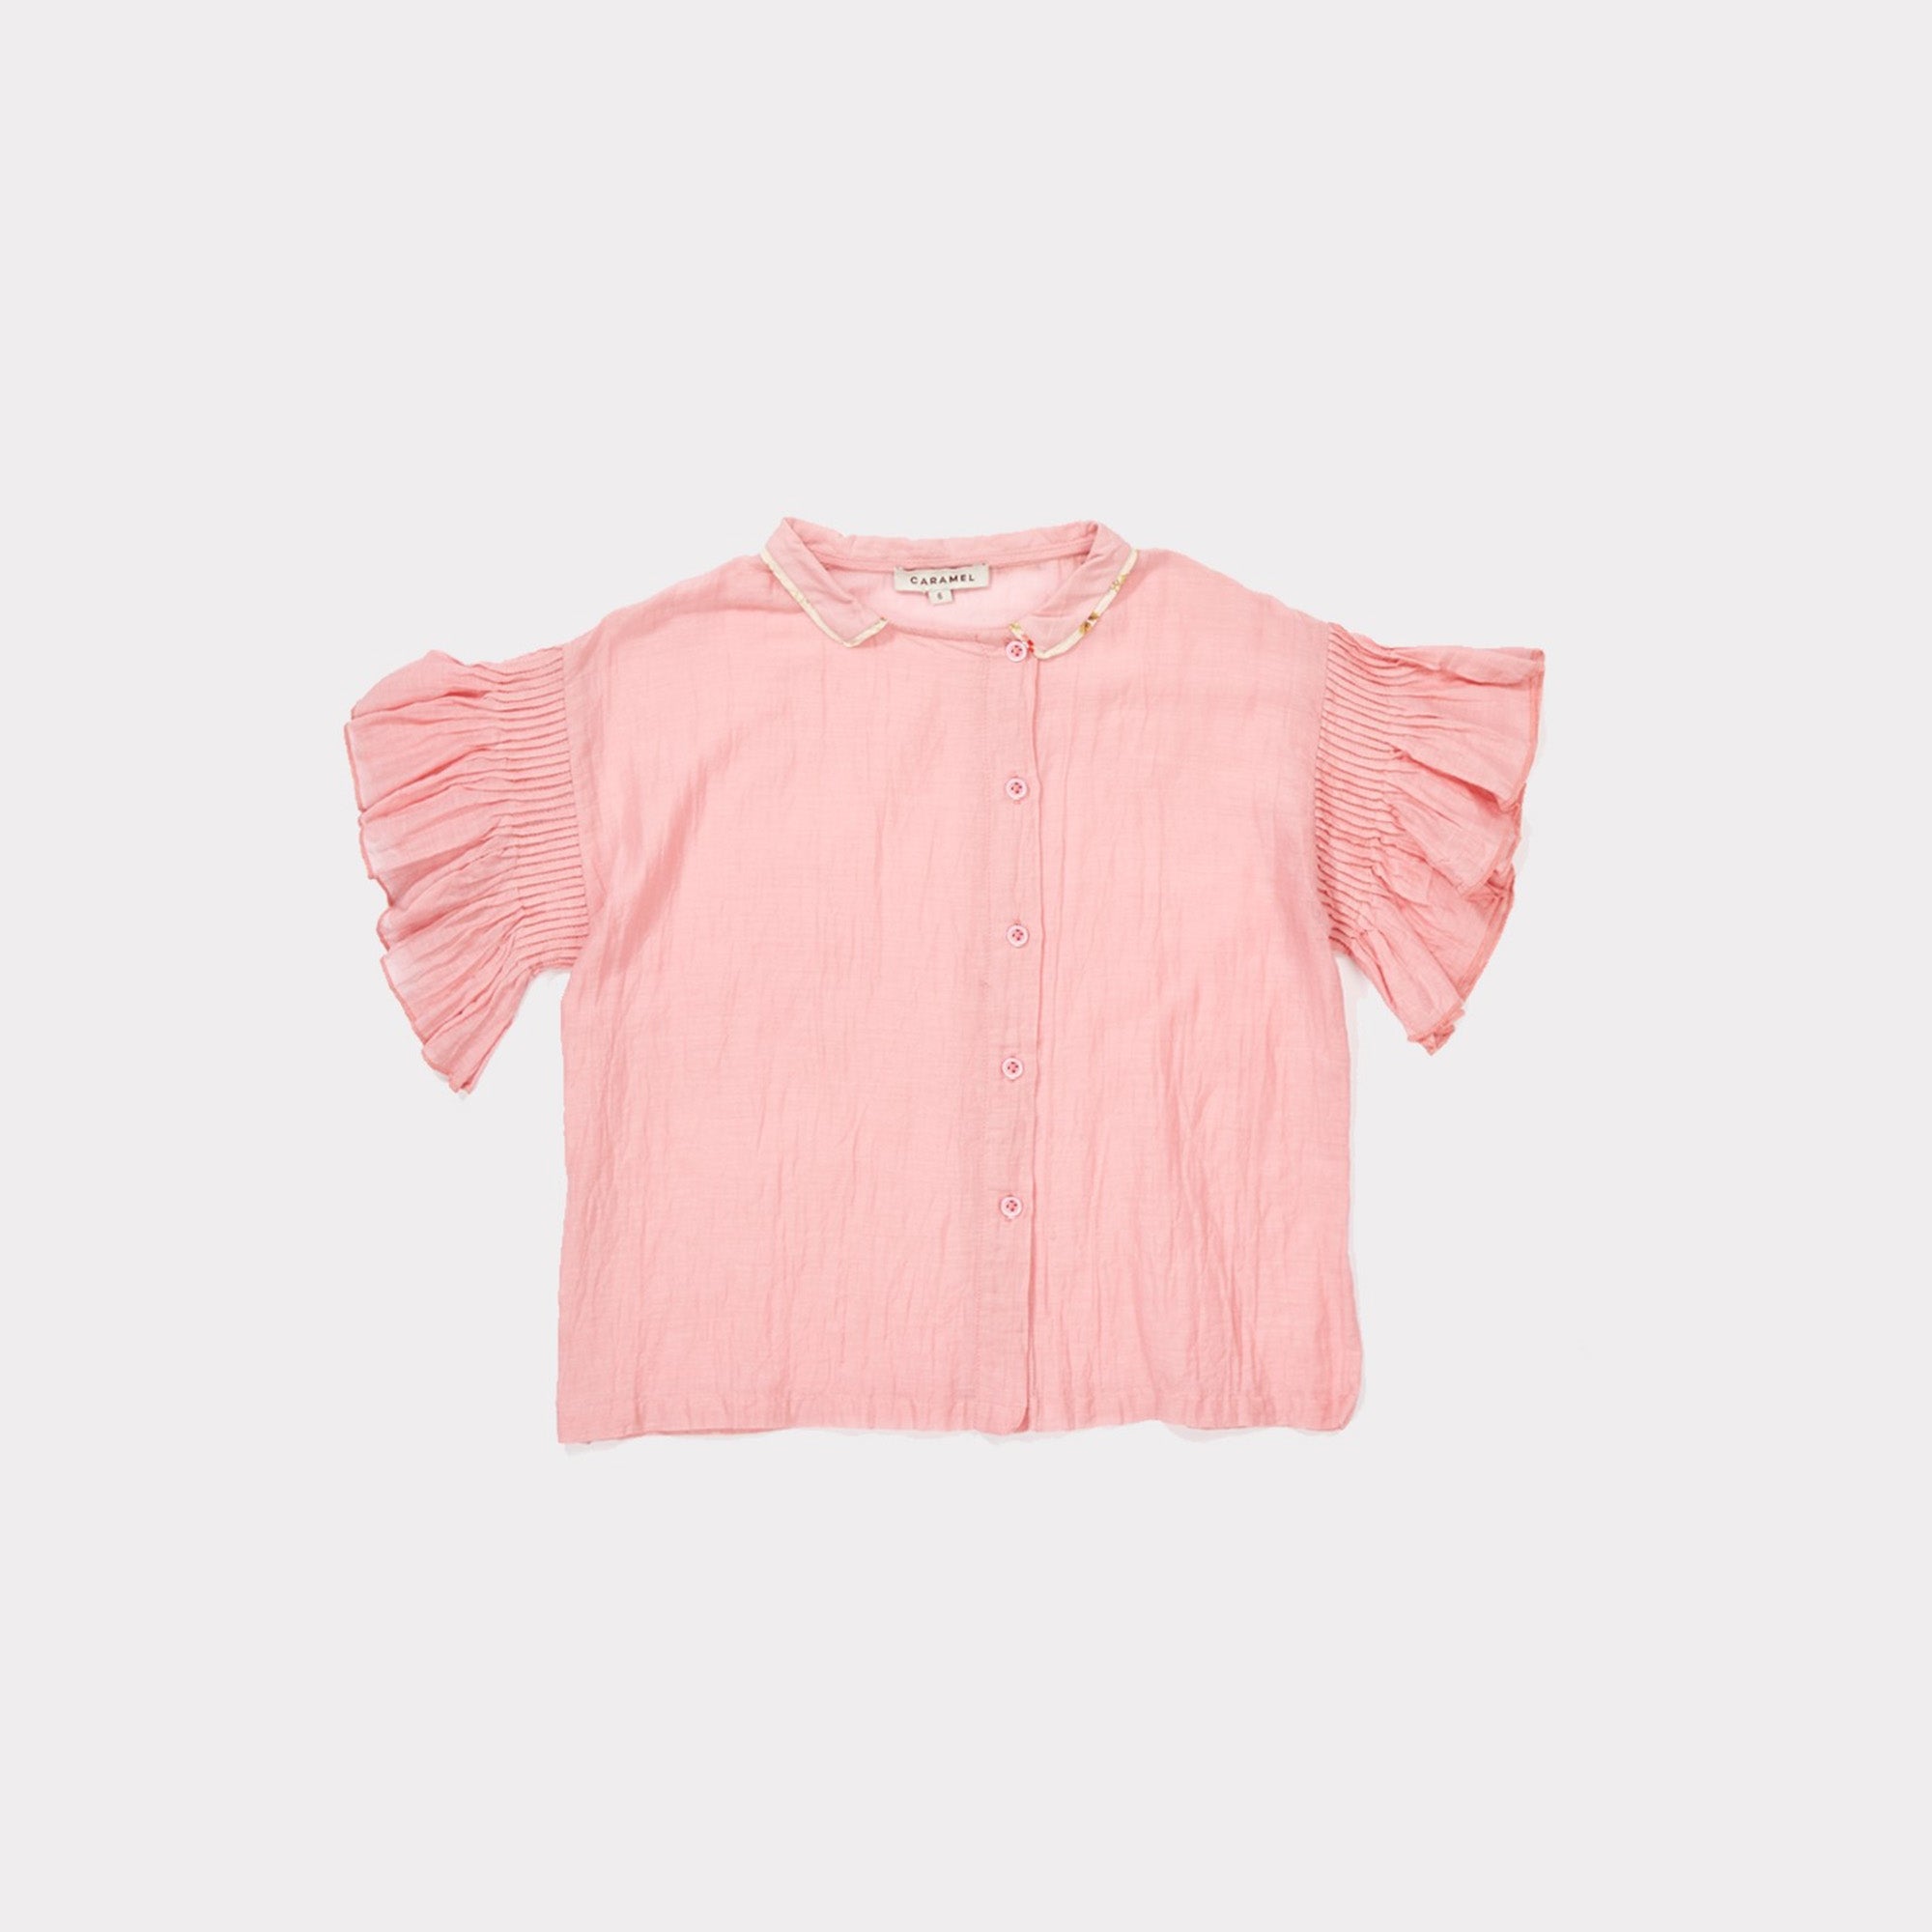 Girls Candy Pink Cotton Woven T-shirt